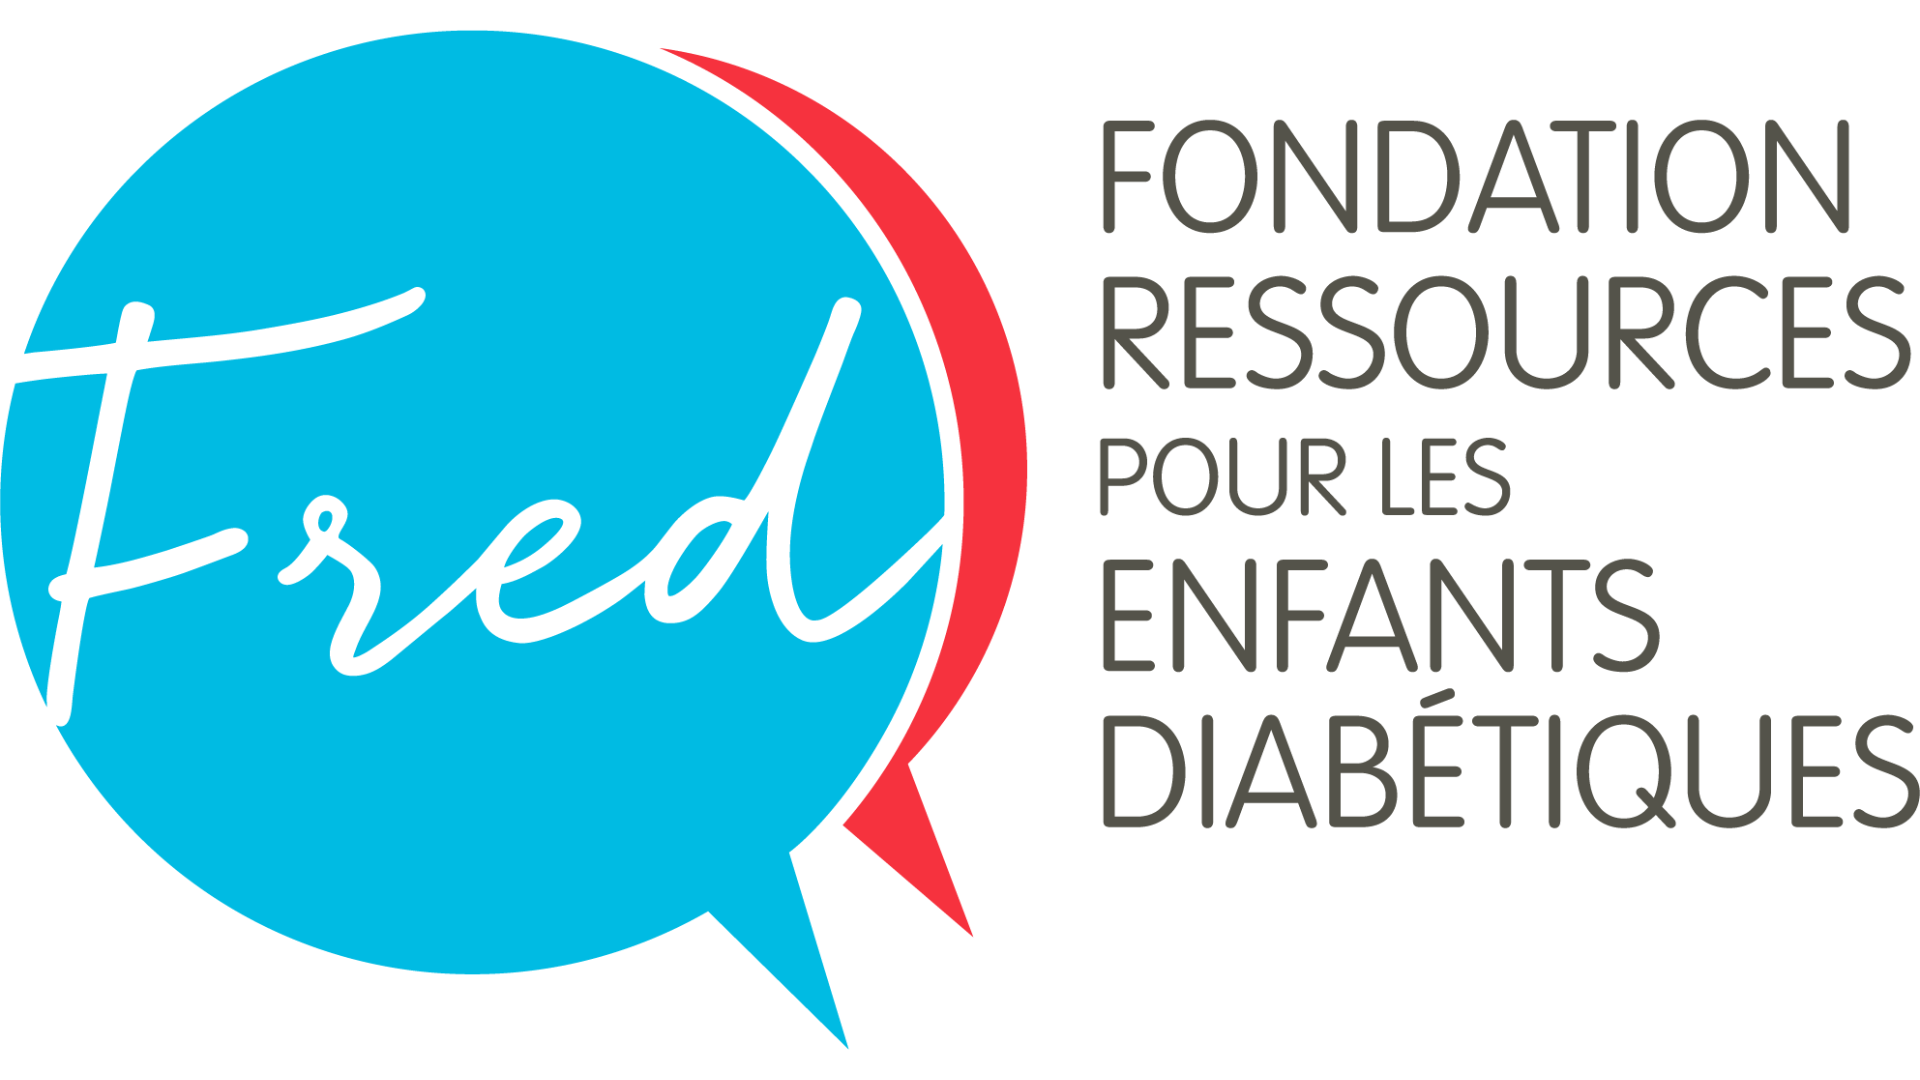 Fondation ressources pour les enfants diabétiques